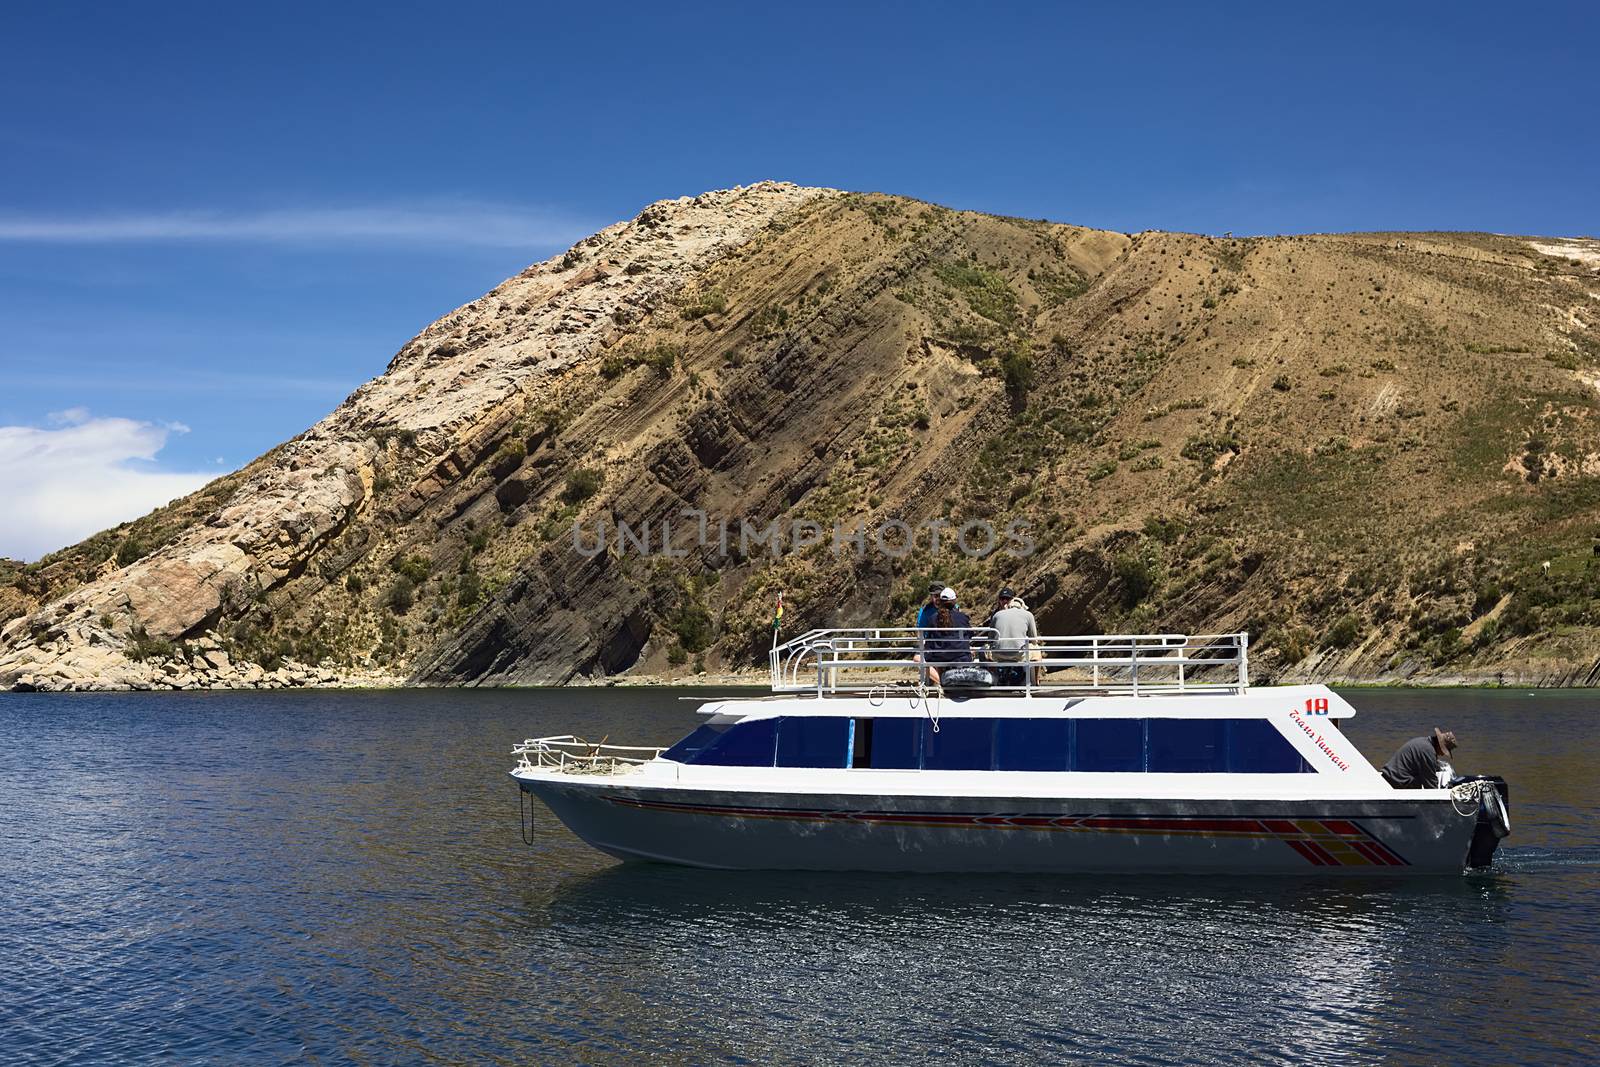 Tour Boat Leaving Isla del Sol, Bolivia by ildi